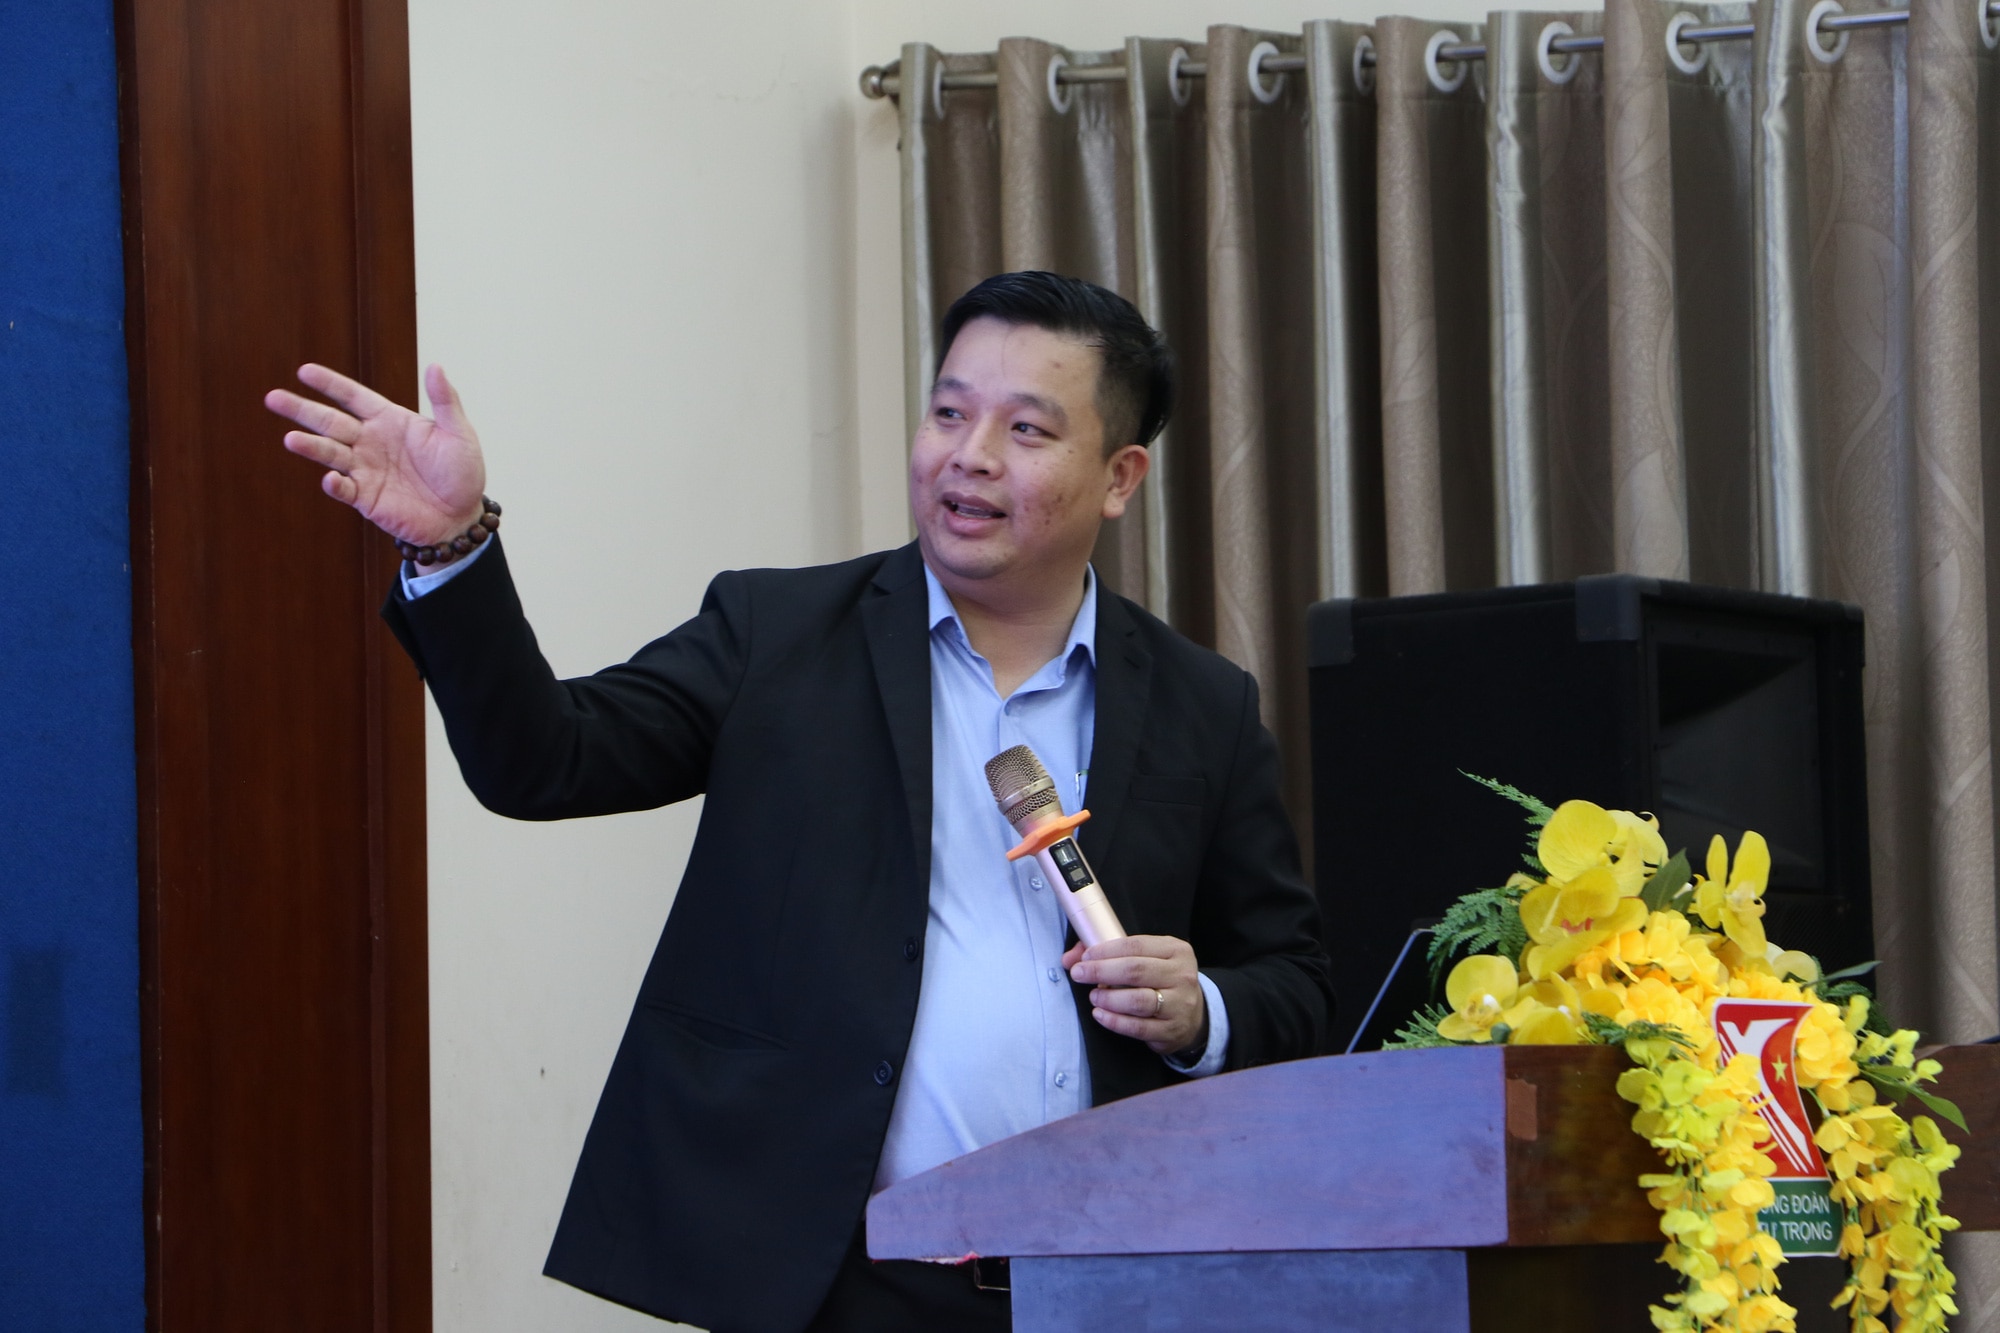 Anh Dương Trọng Phúc, phó hiệu trưởng Trường Đoàn Lý Tự Trọng, chia sẻ tại chuyên đề Ứng dụng công nghệ trong hoạt động chi đoàn - Ảnh: BÌNH MINH